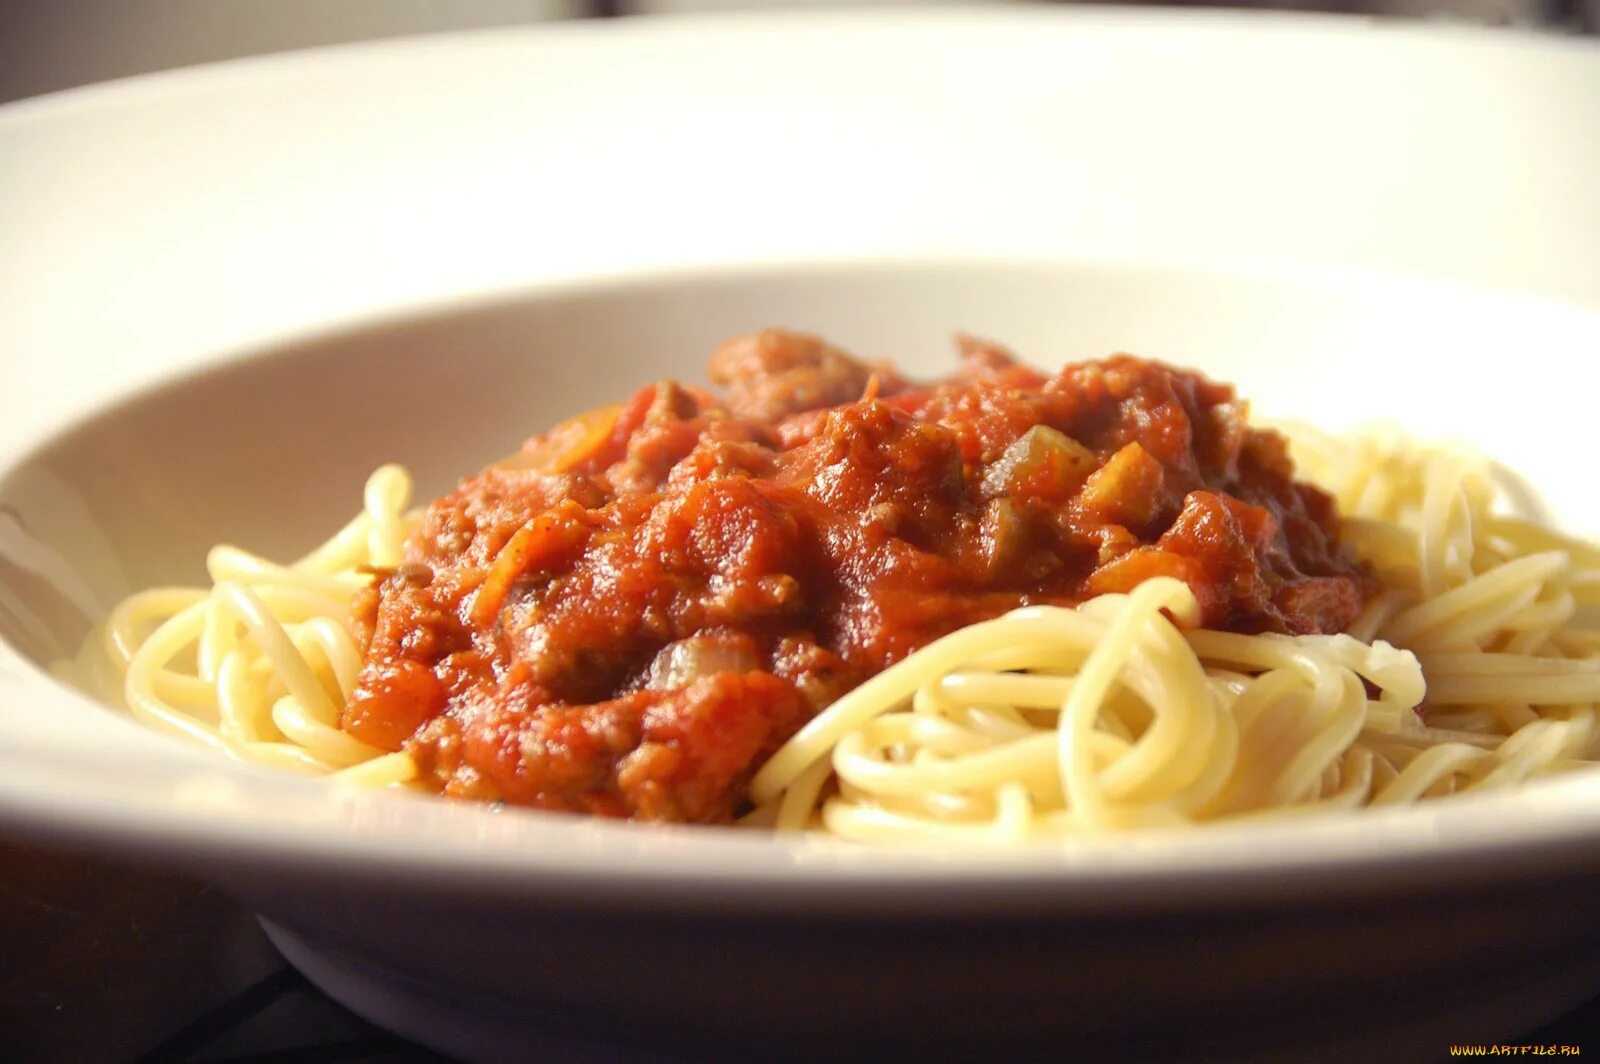 Спагетти болоньезе сыроварня. Макароны с подливкой. Макароны с мясным соусом. Спагетти с подливкой. Спагетти болоньезе томатная паста